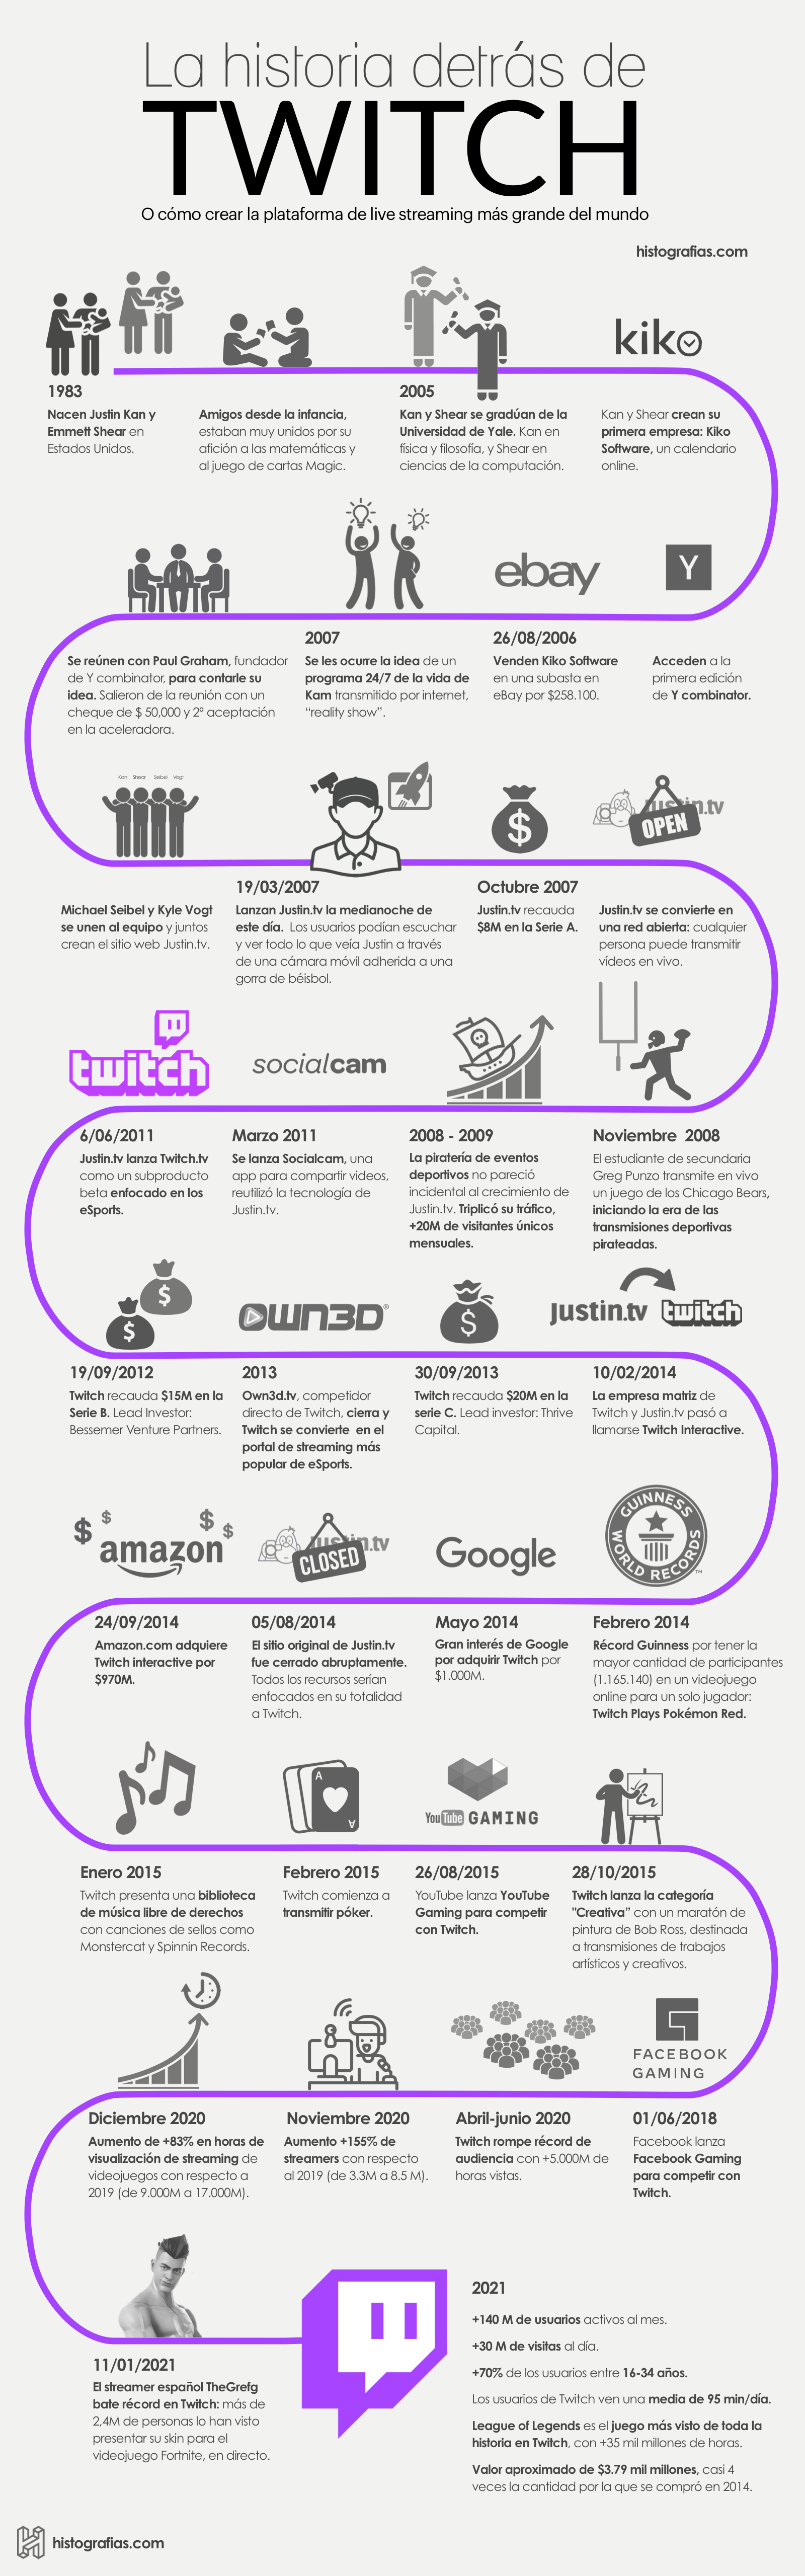 Infografía que cuenta la historia de Twitch. Desde el nacimiento de sus fundadores Justin Kan y Emmett Shear en 1983 hasta el año 2021. Año en el que Twitch es considerada la plataforma más grande y popular del mundo con más de 140 millones de usuarios activos al mes y más de 30 millones de visitas al día.